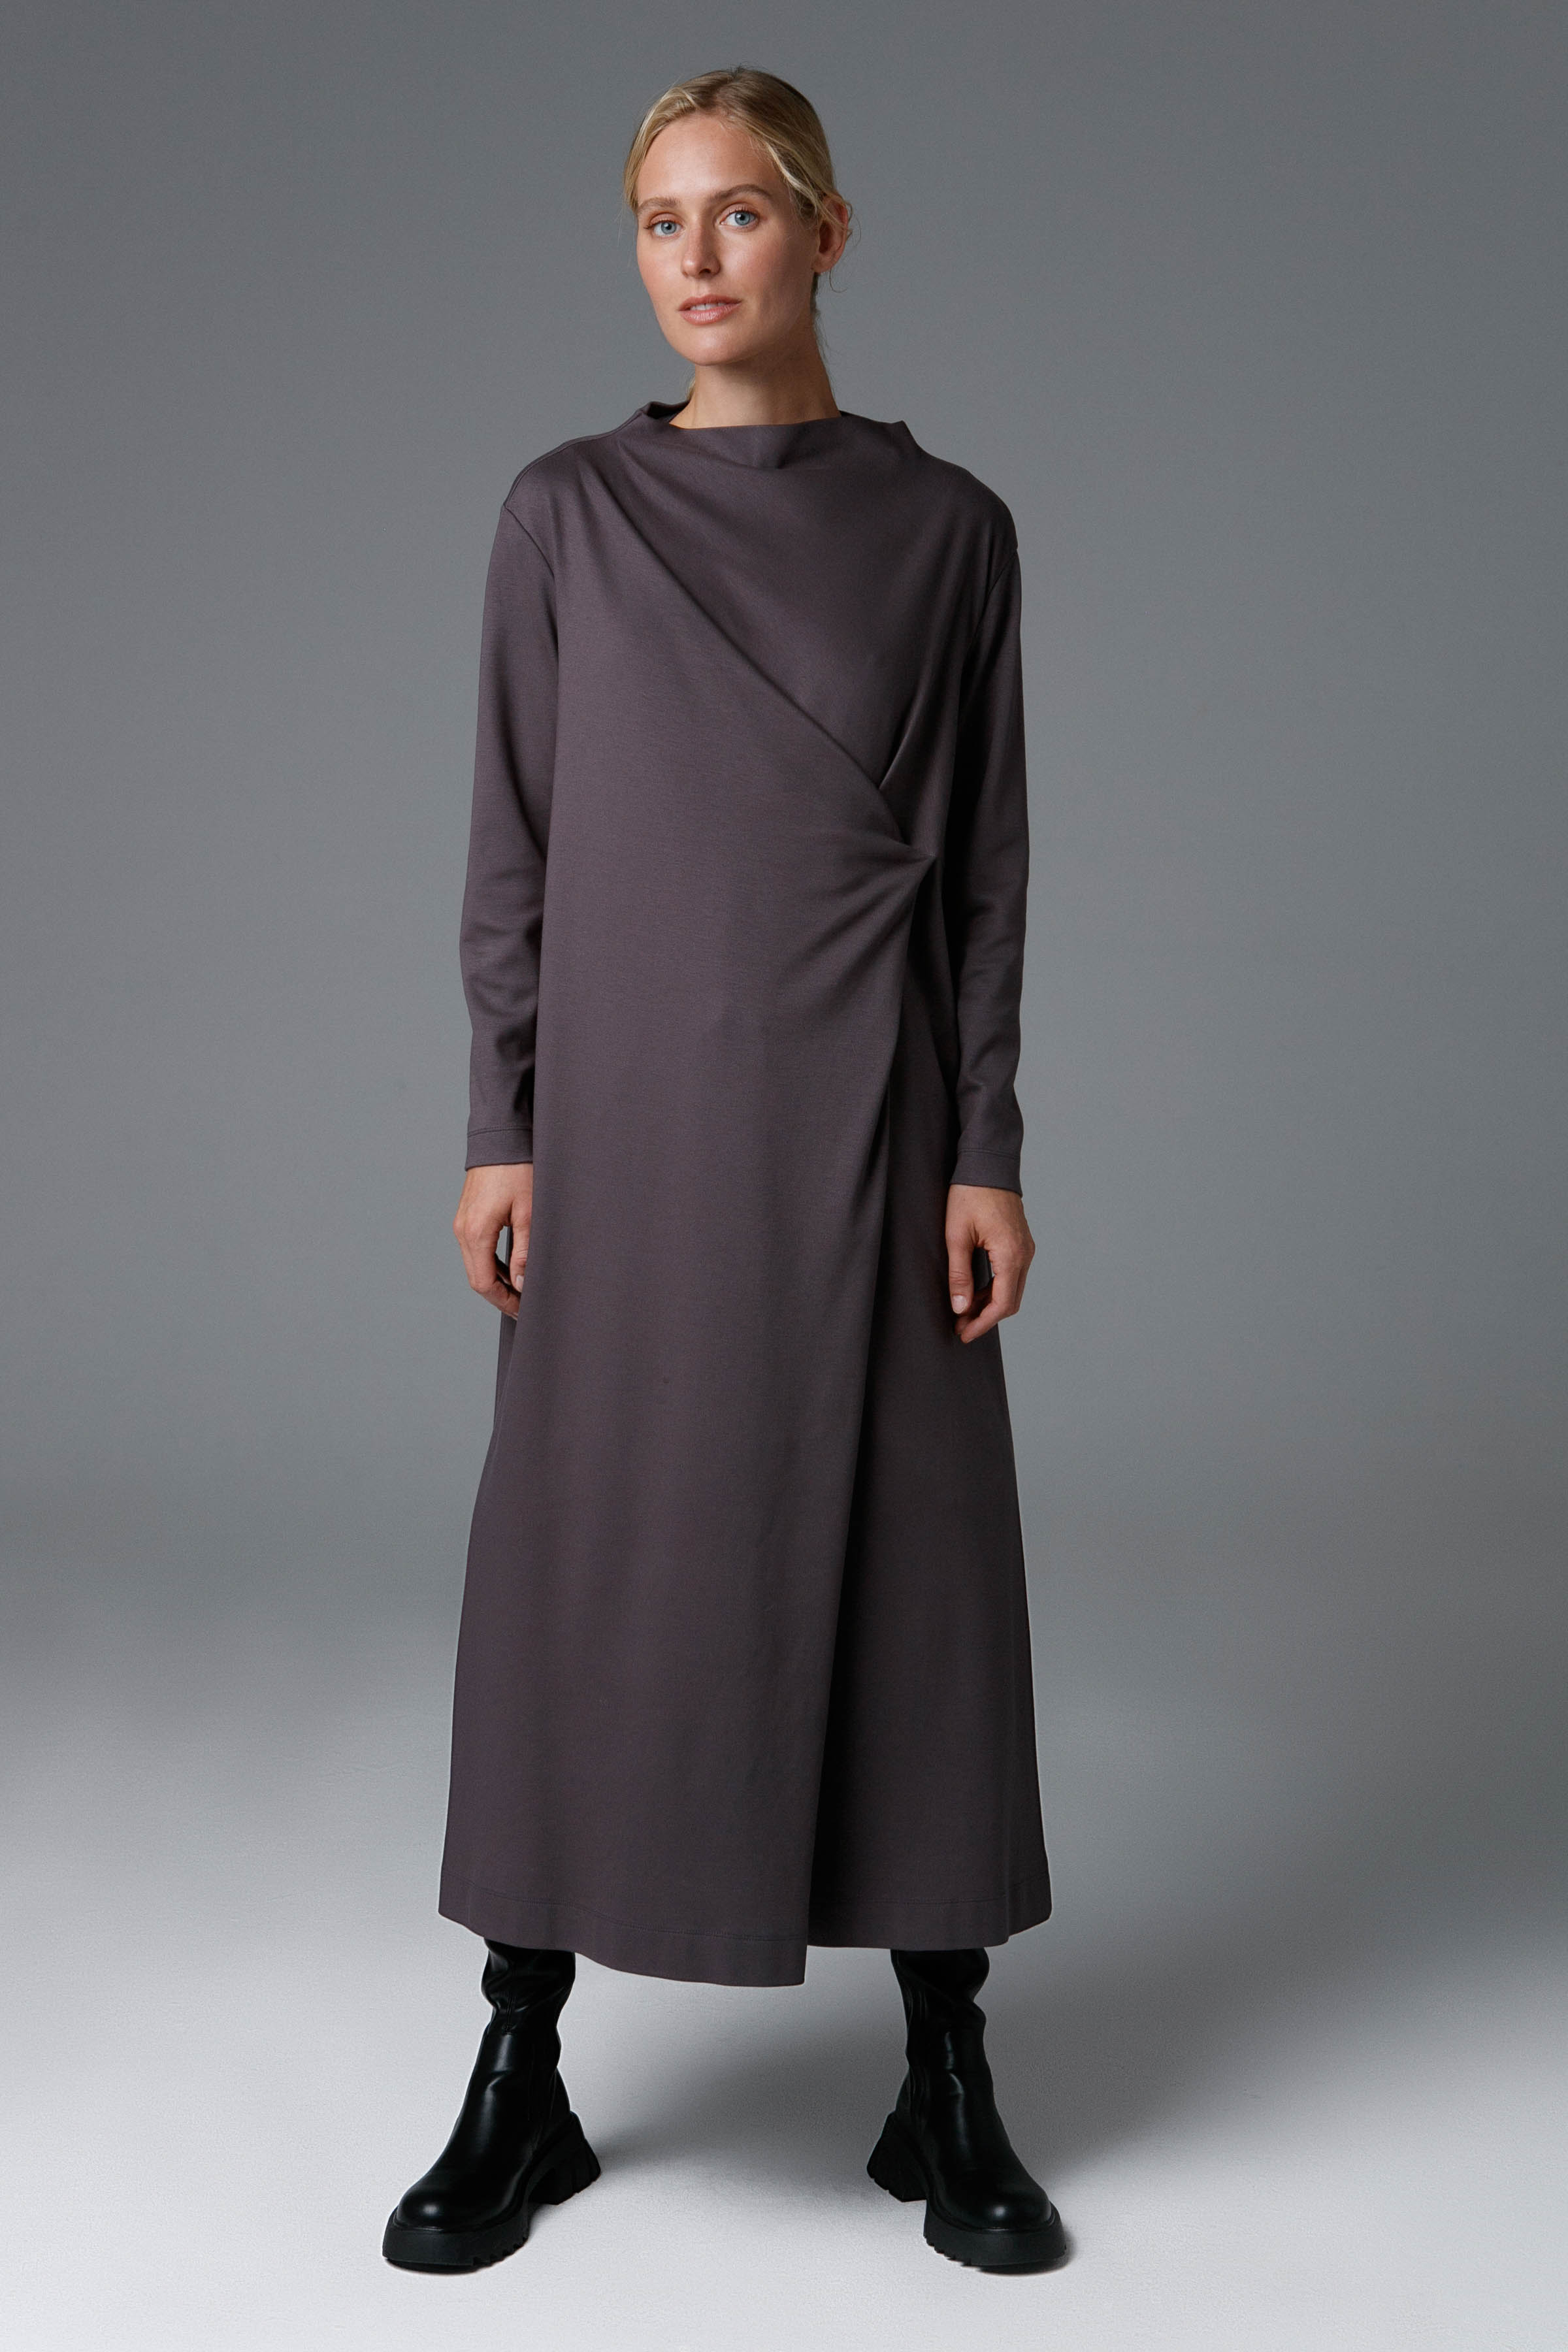 Платье драпировка, джерси 10 Серый (grise) от Lesel (Лесель)! Заказывайте по ✆ 8 (800) 777 02 37